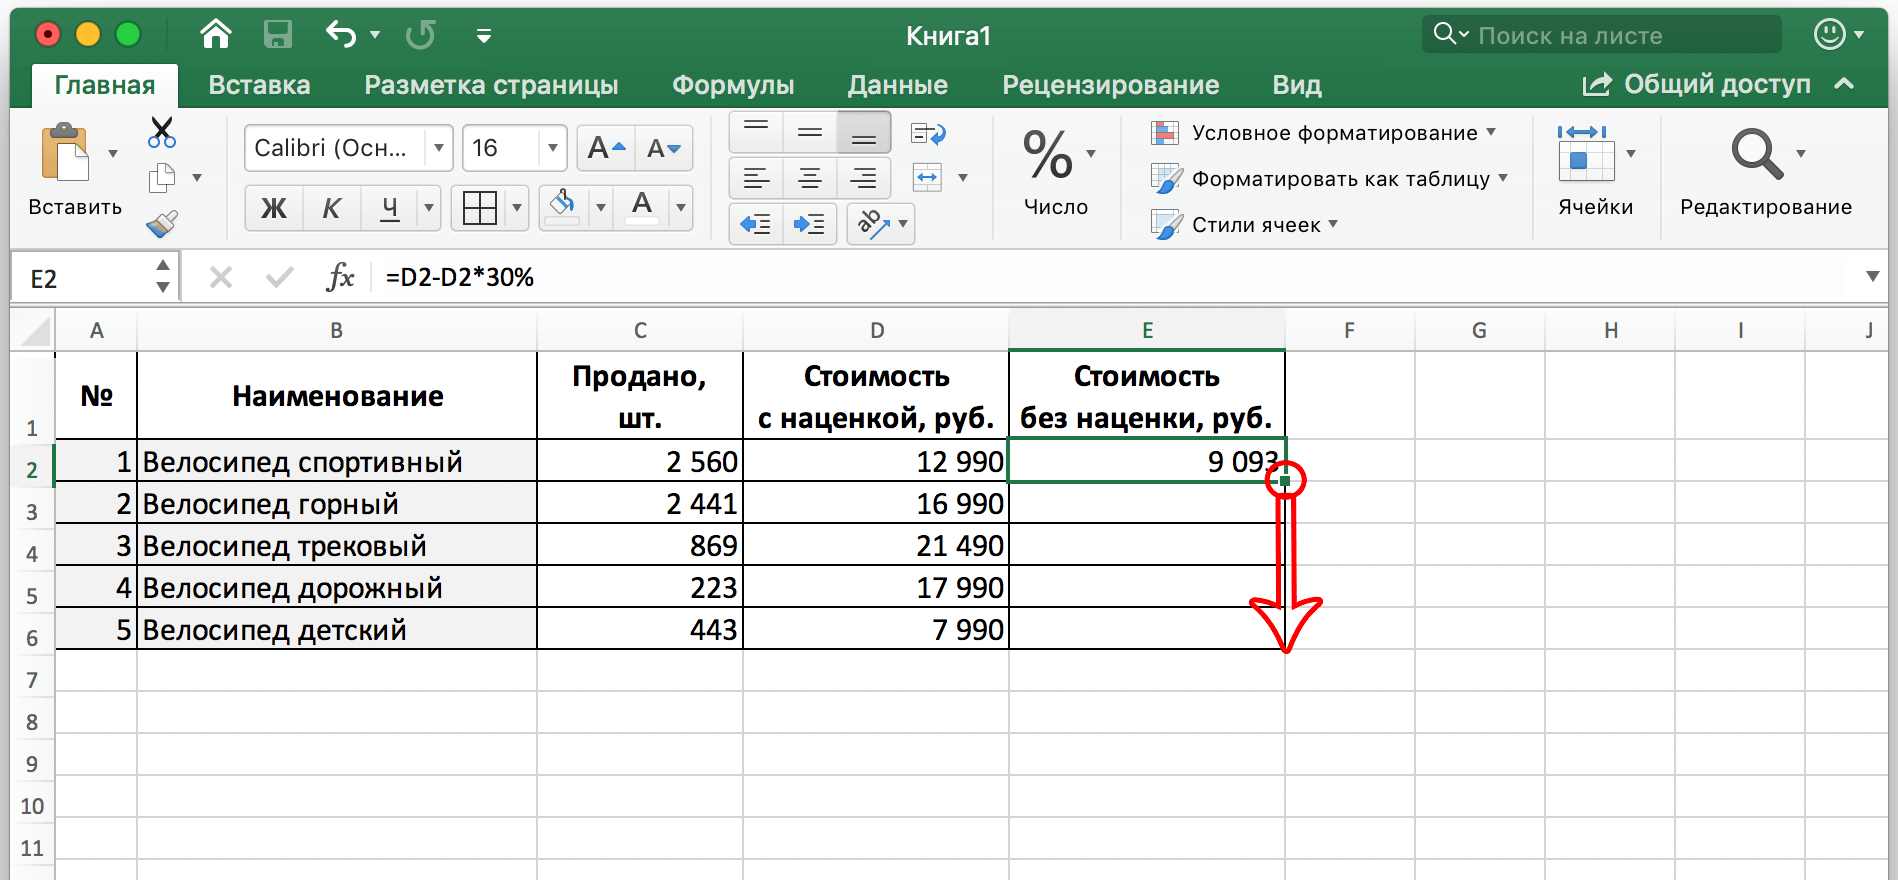 Как вычесть процент от числа в Excel. От числа, в заполненной таблице, в таблице с фиксированным процентом